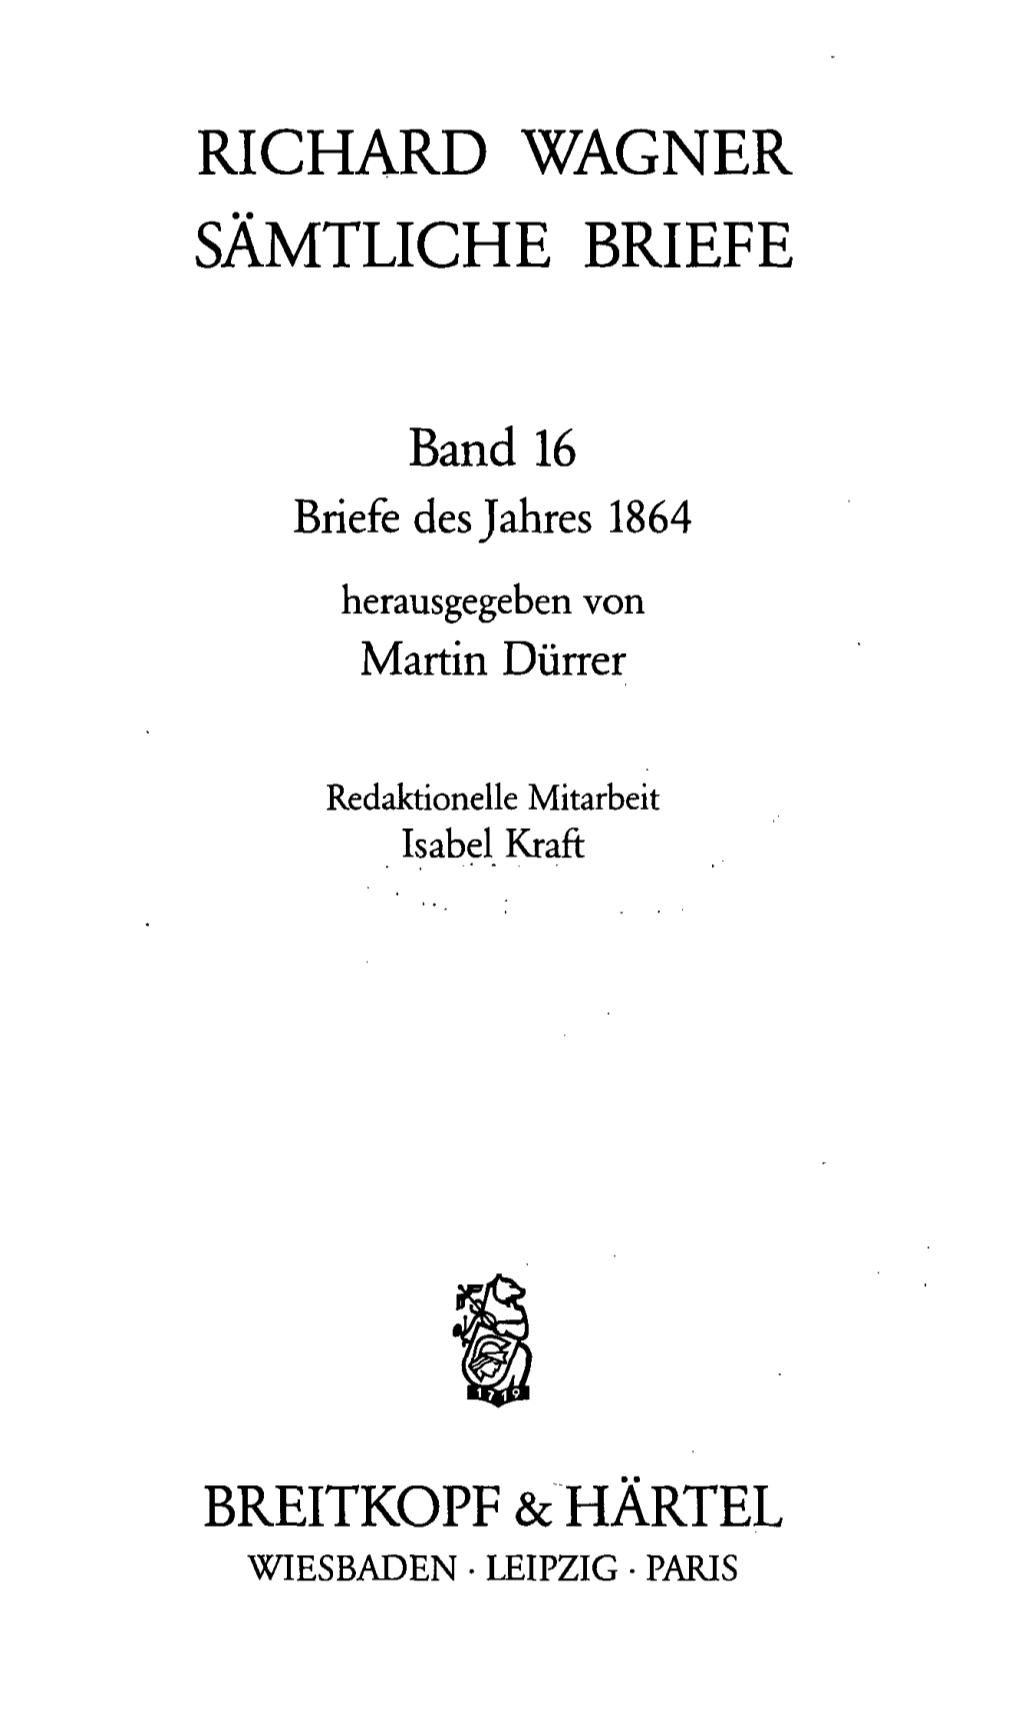 Richard Wagner Sämtliche Briefe Breitkopf & Hartel